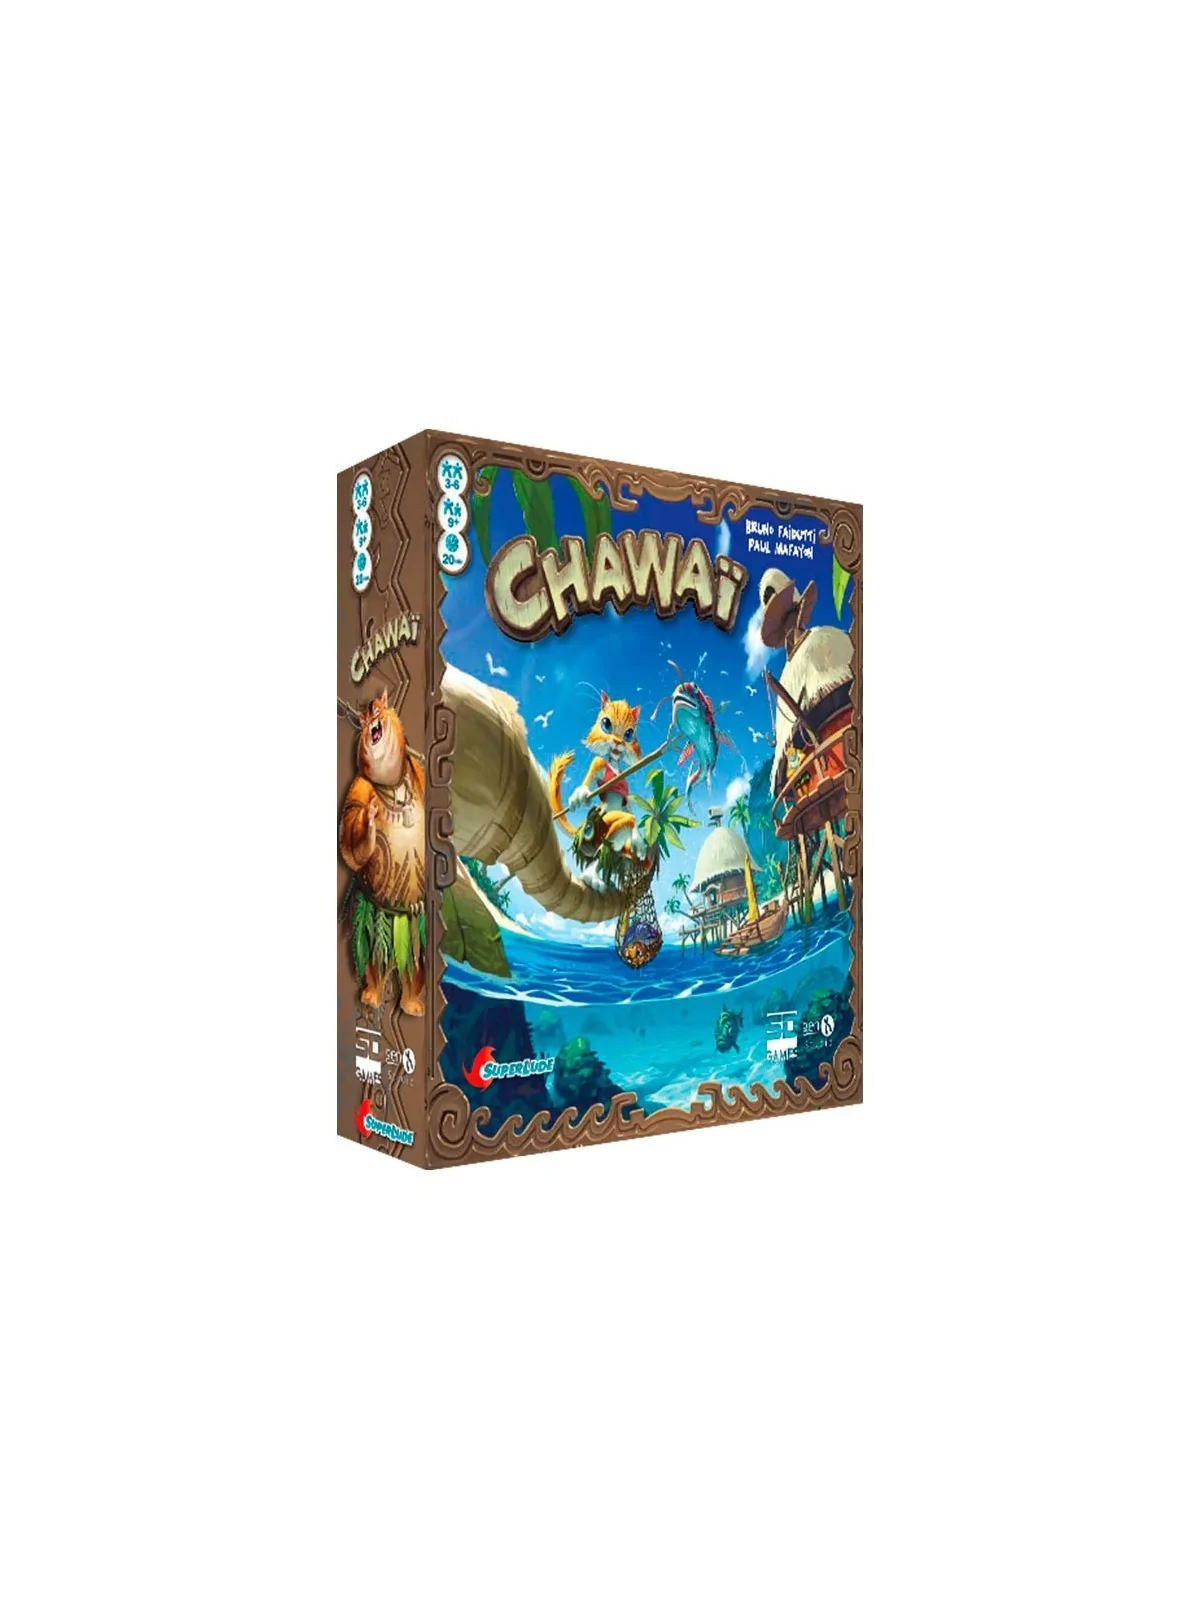 Comprar Chawai barato al mejor precio 11,65 € de SD GAMES